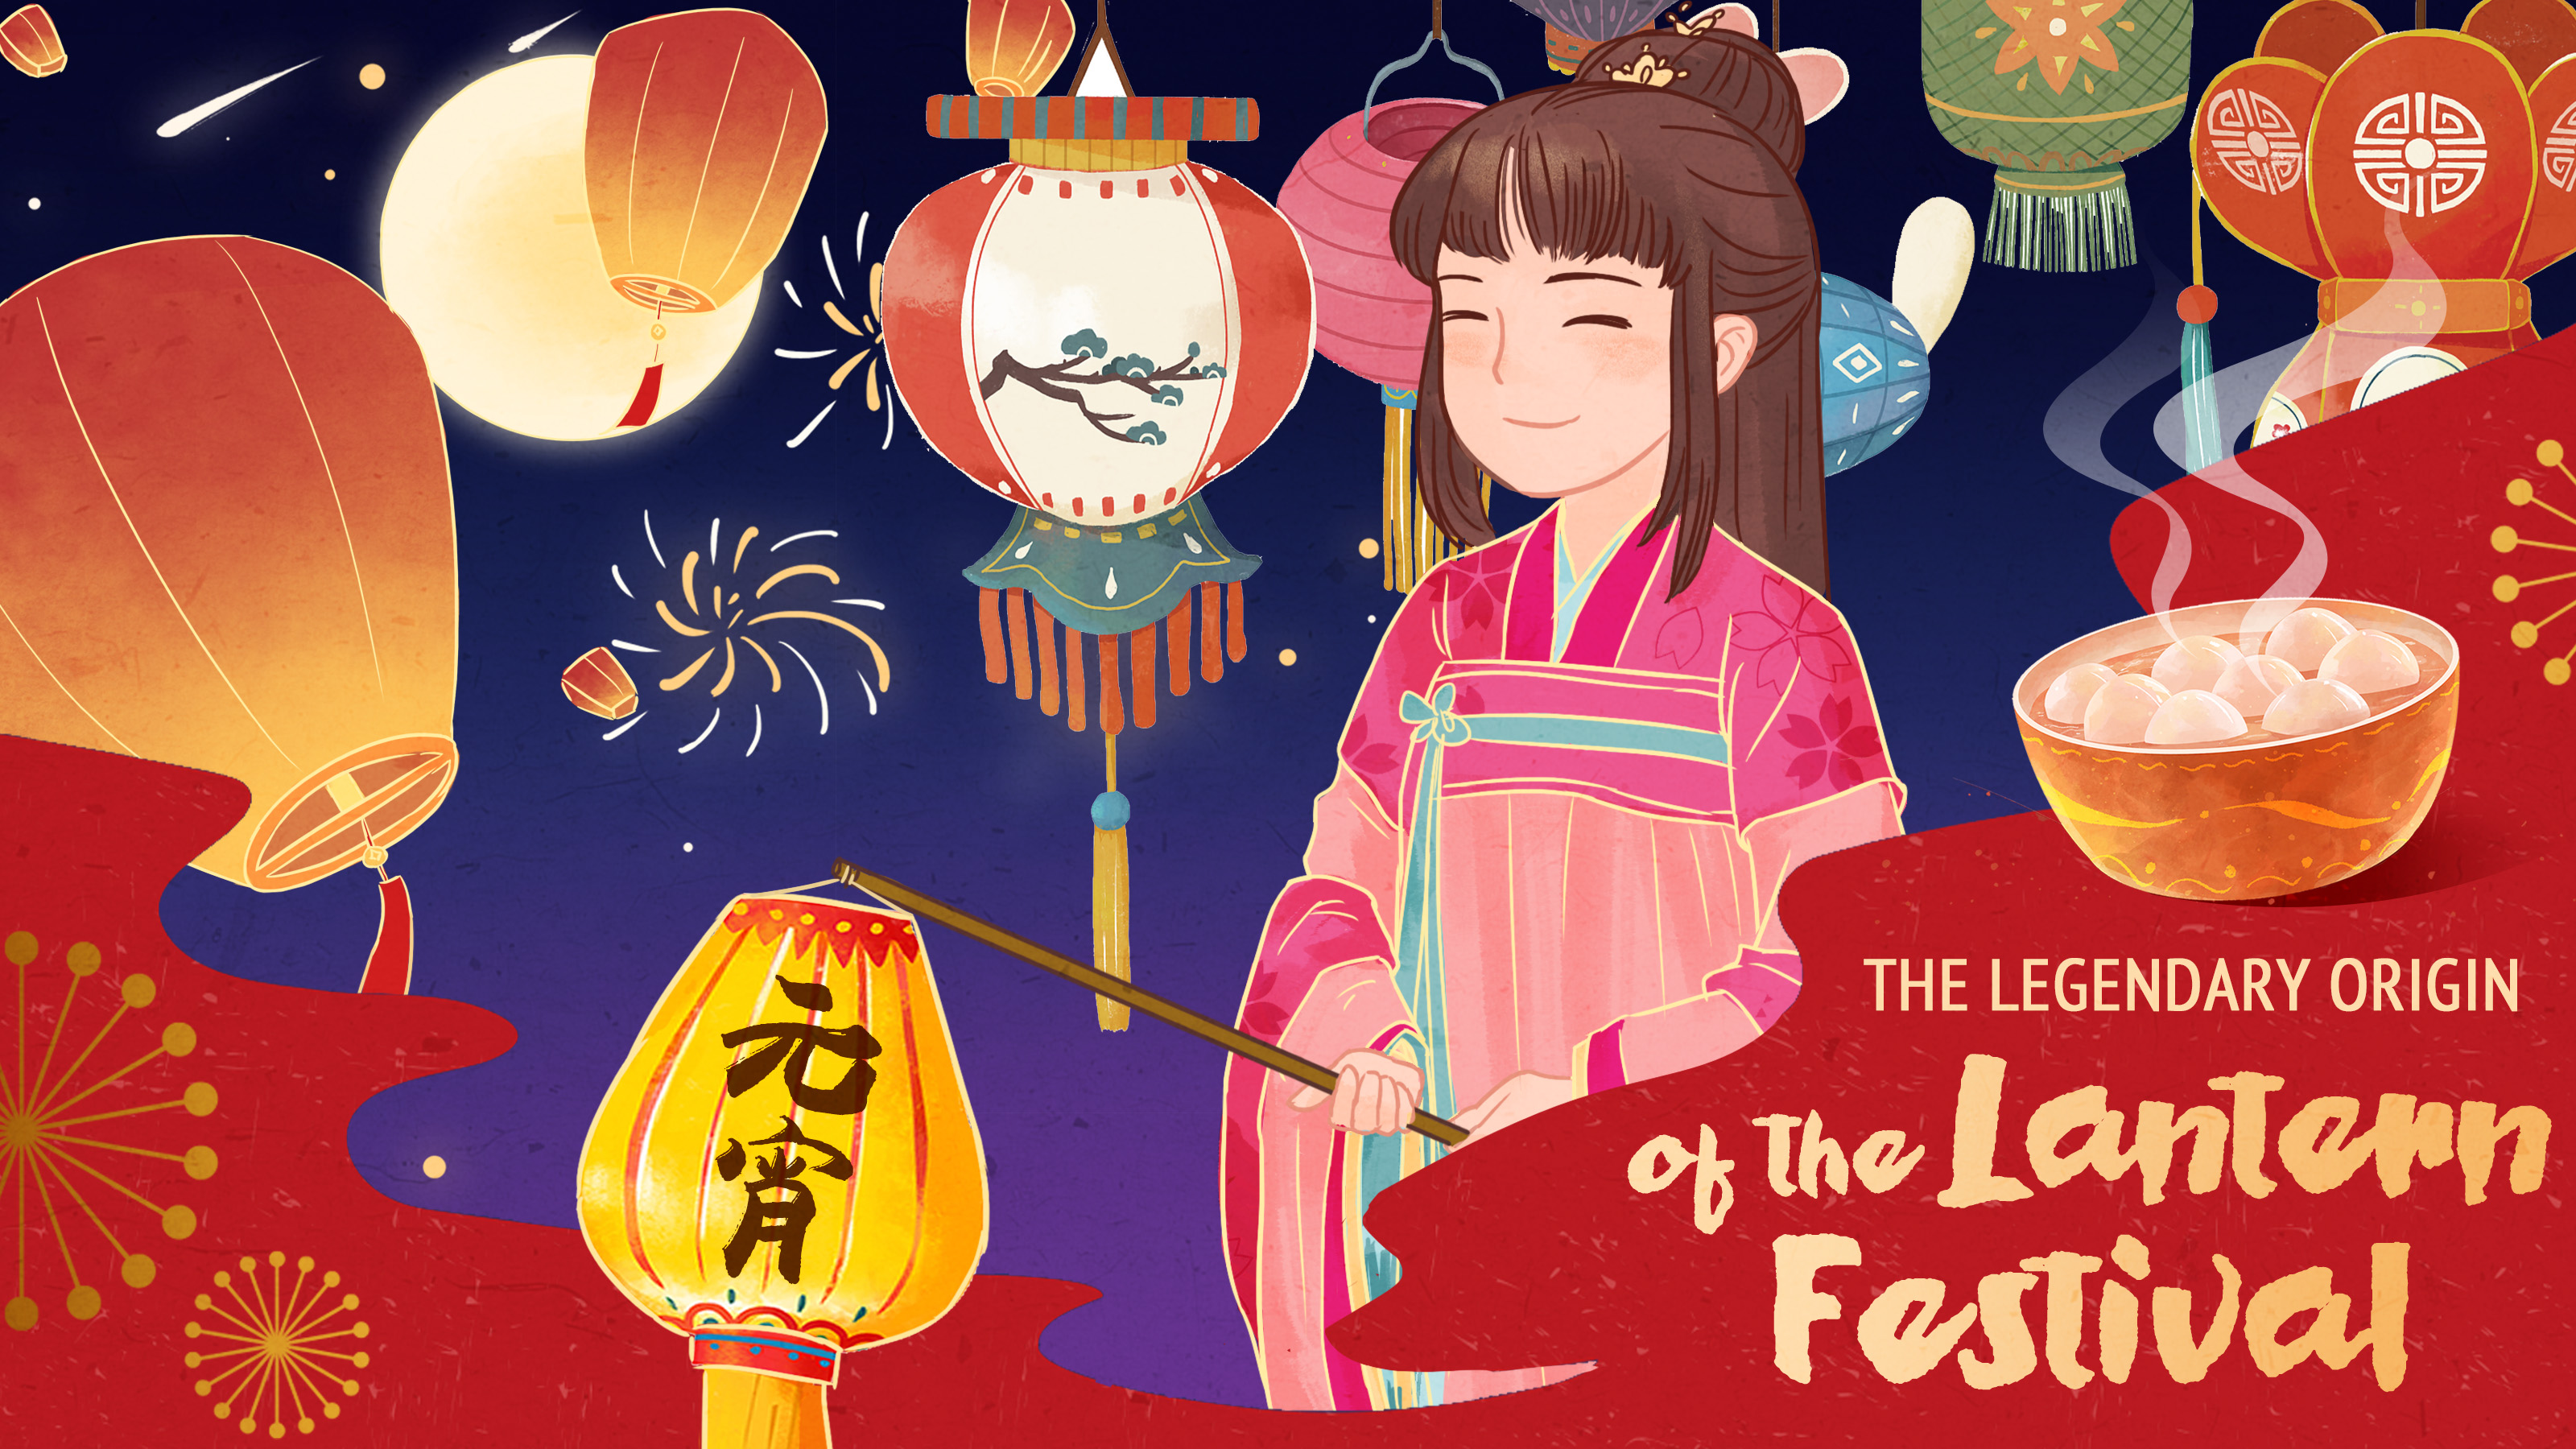 The legendary origin of the Lantern Festival CGTN